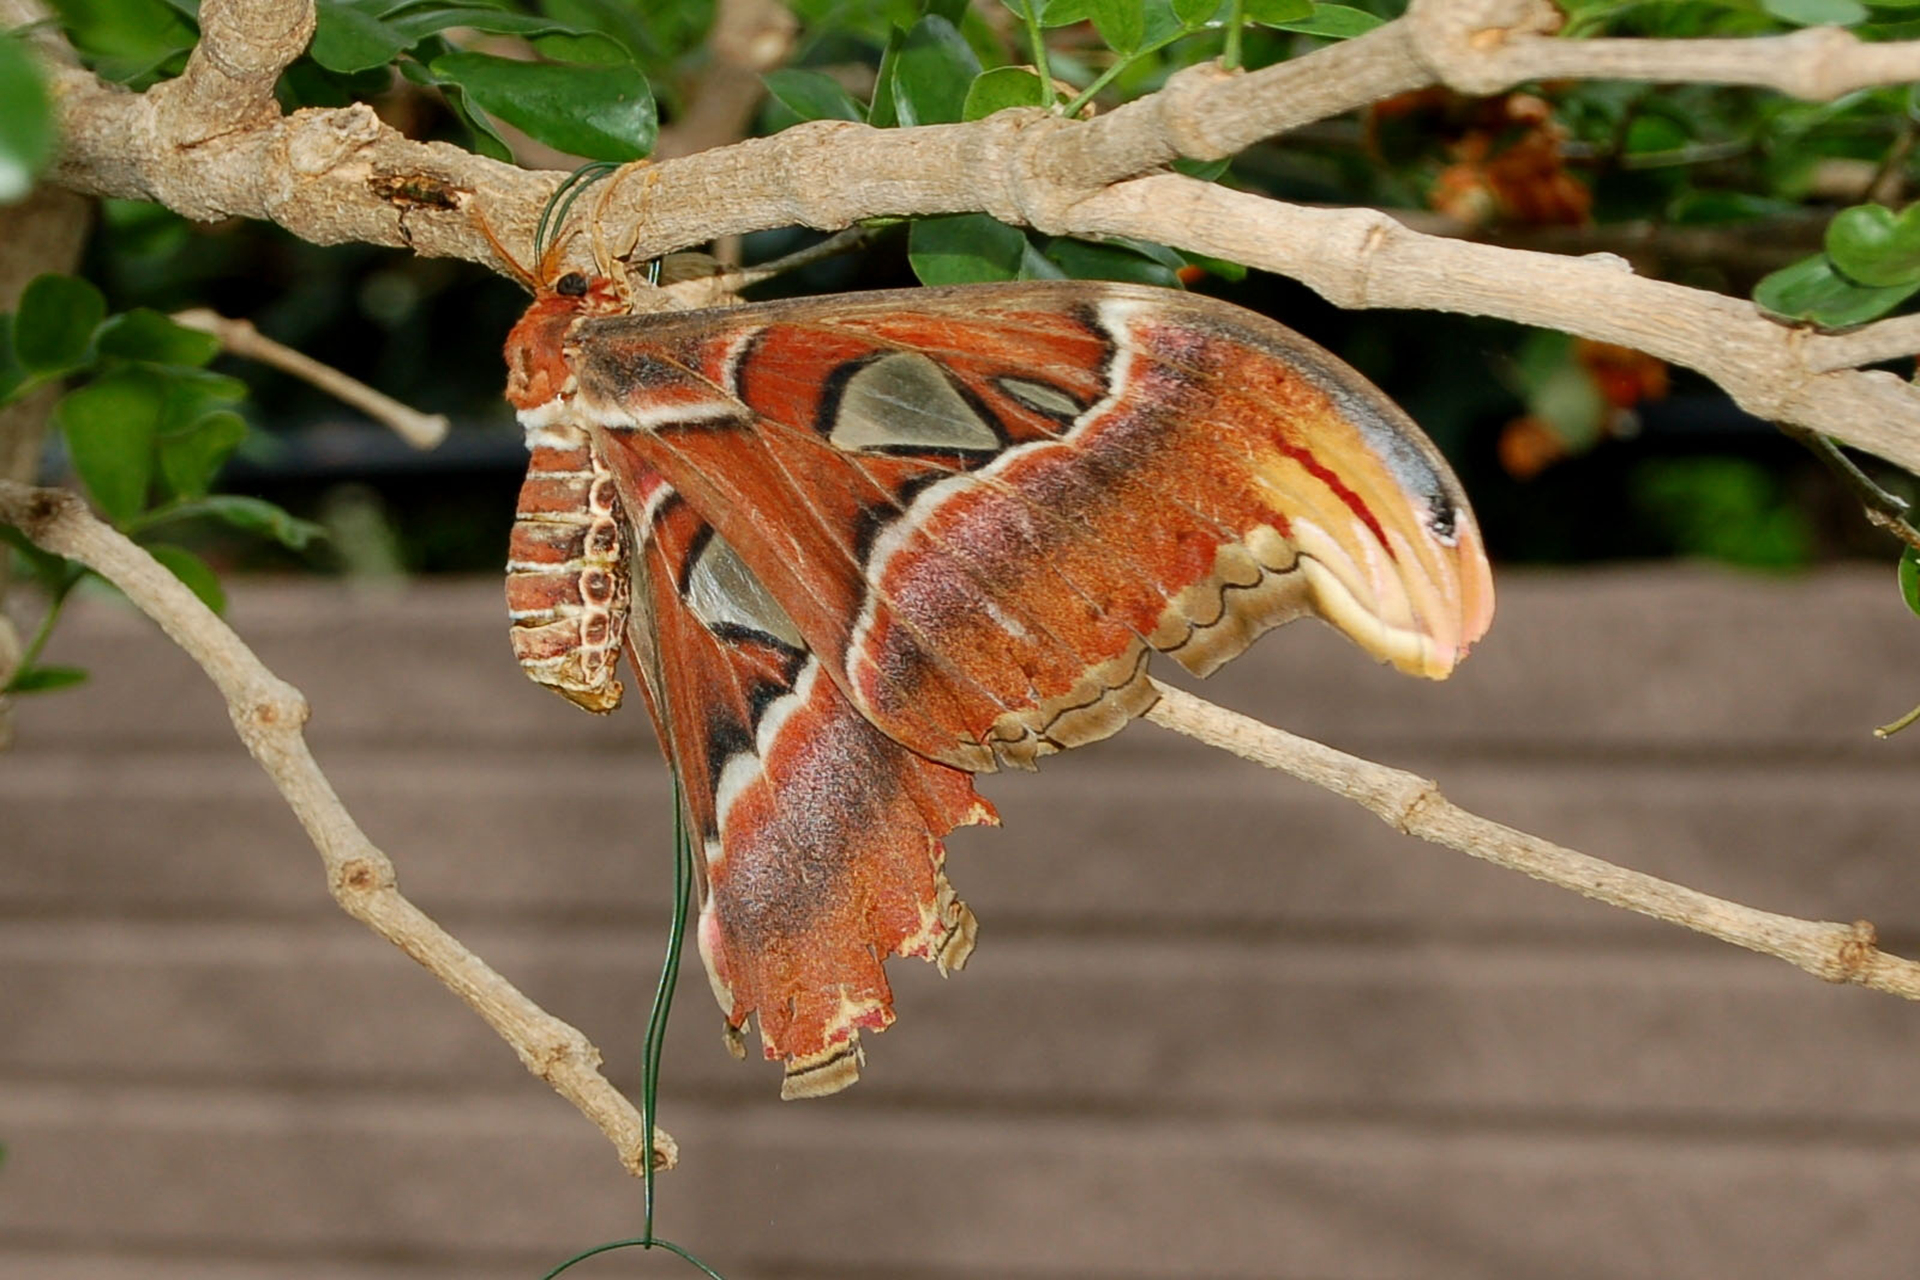 阿特拉斯蛾寿命非常短,而且没有嘴,东南亚特有的飞蛾